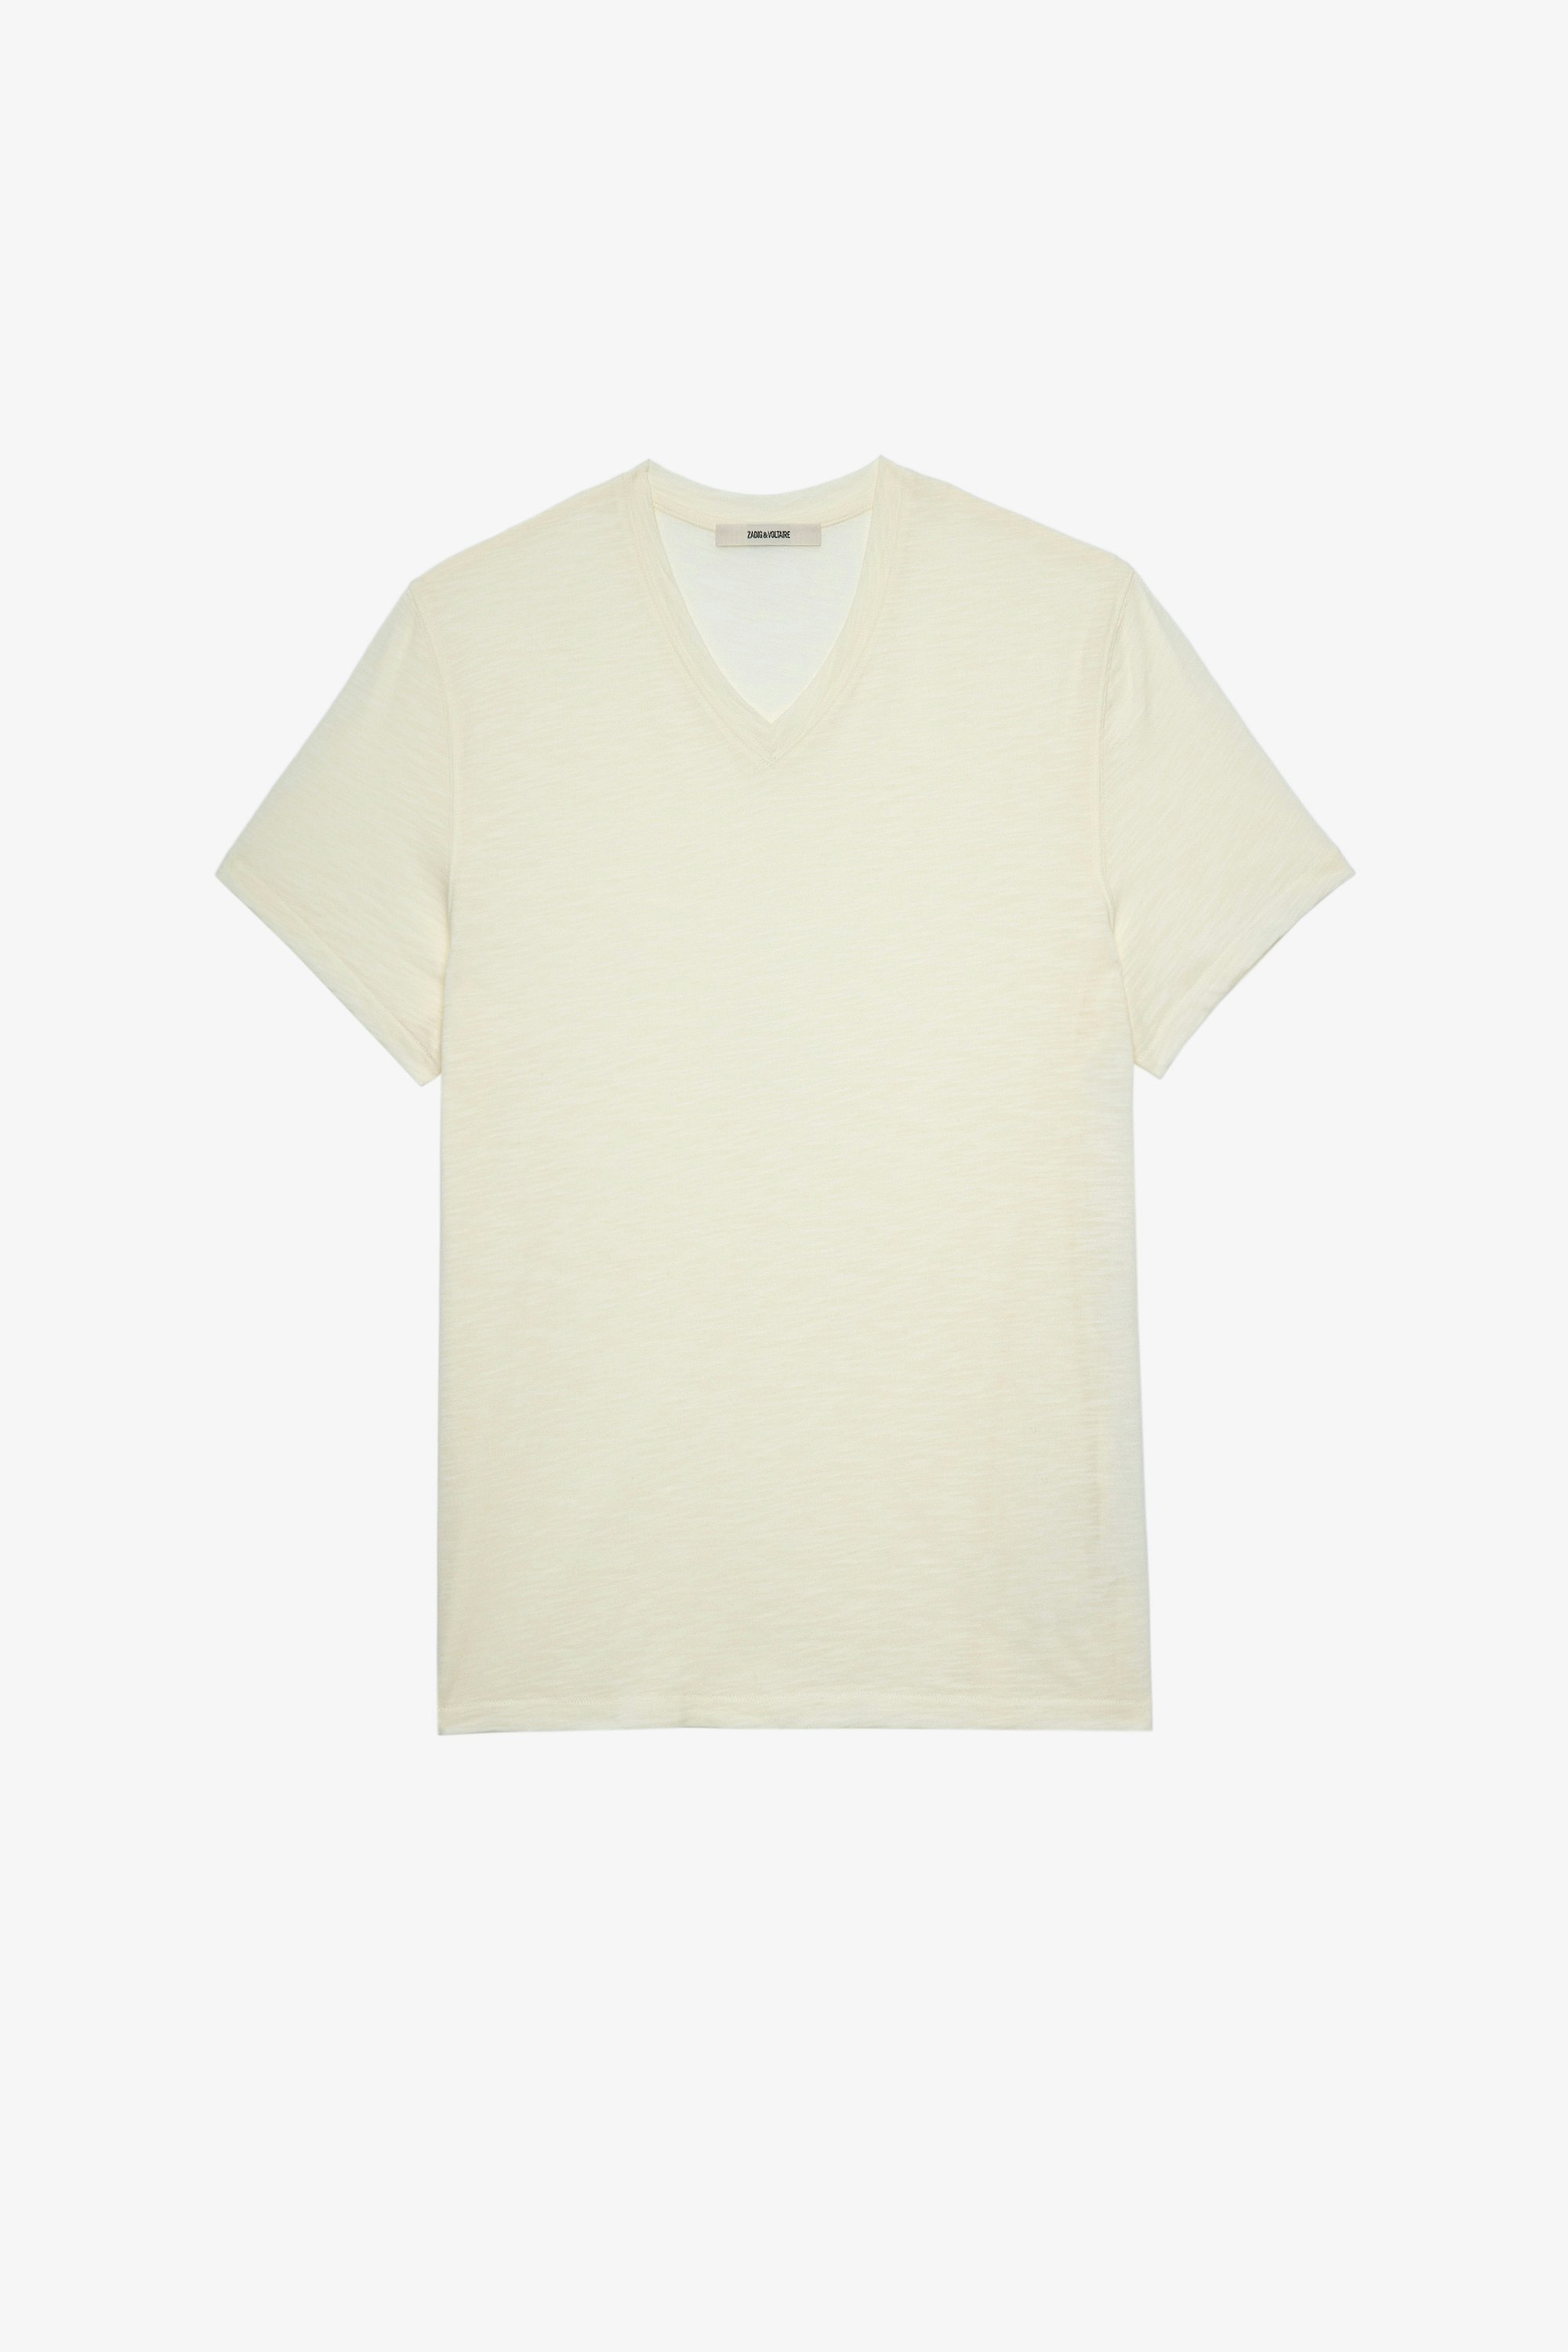 Stocky Slub Ｔシャツ Men’s ecru slub cotton T-shirt